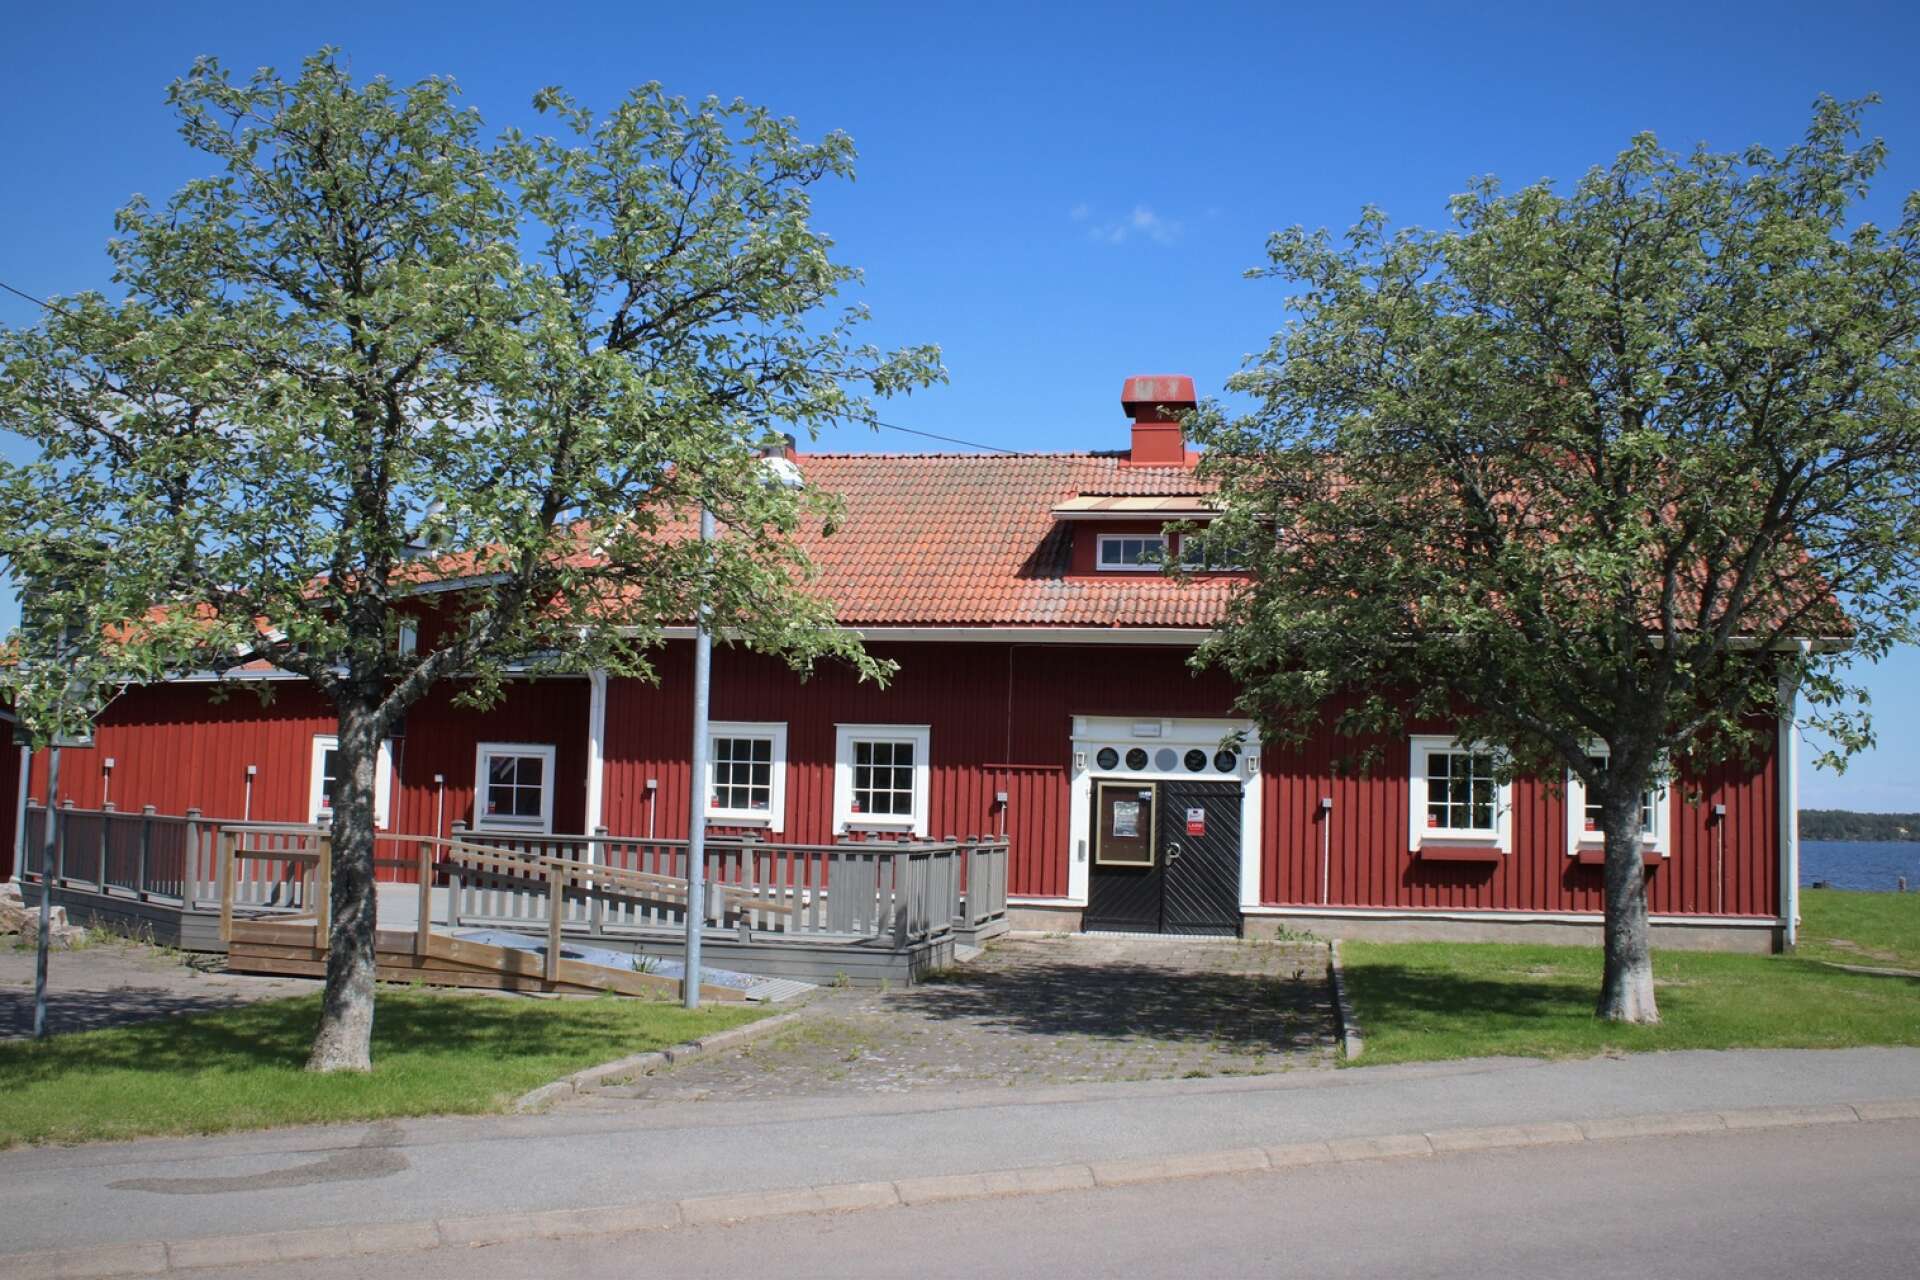 Lagom till högsommaren, ett drygt år efter Harryskonkursen, kommer den sjönära restaurangbyggnaden vid hamninloppet till Åmål åter att fyllas av liv. 